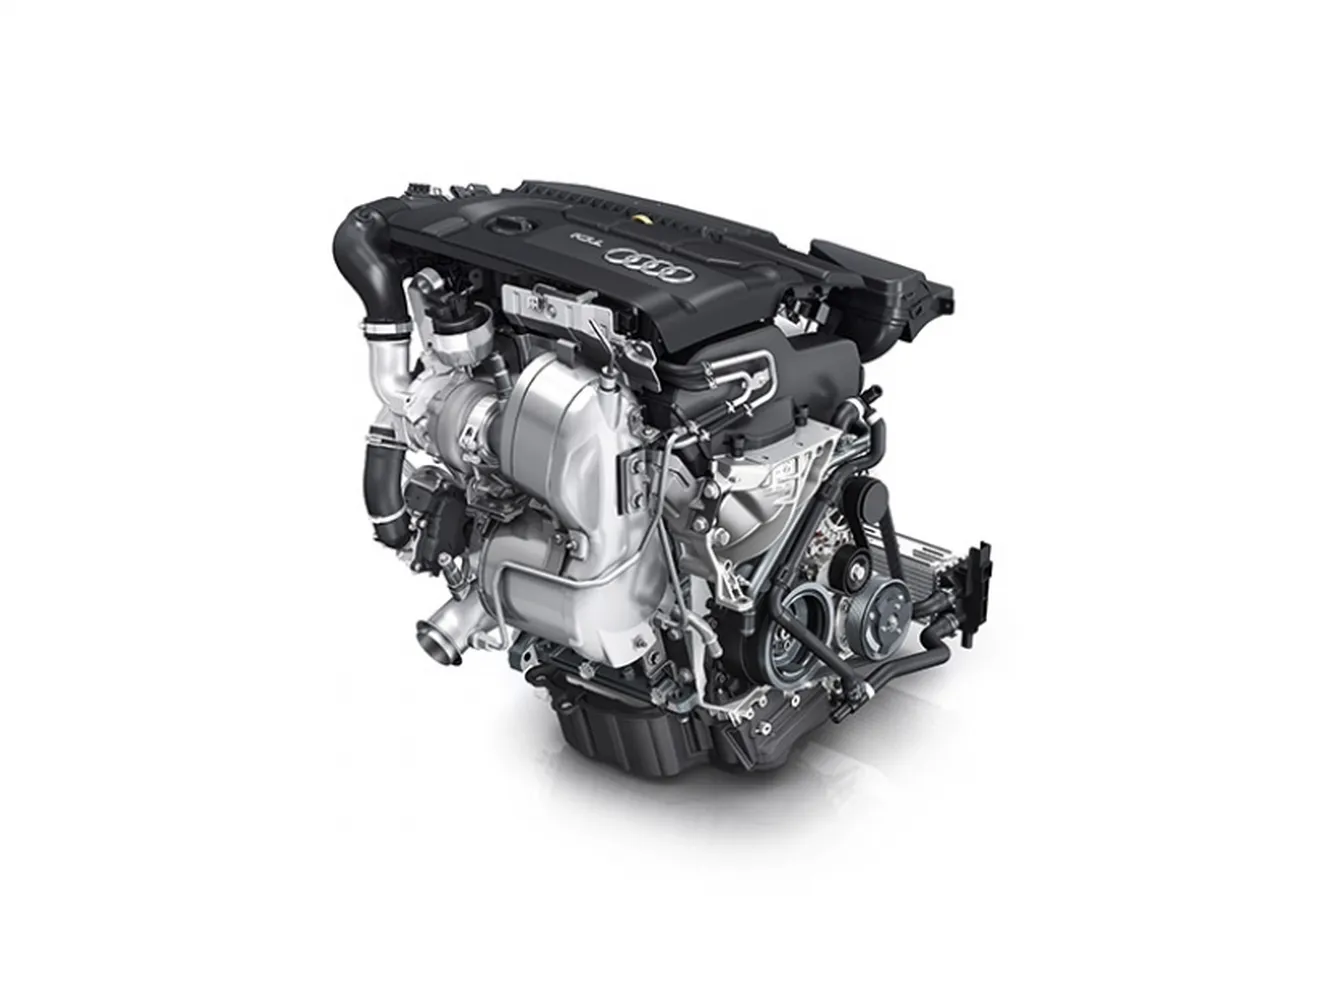 Nuevo motor 1.4 TDI de Audi, tres cilindros y máxima eficiencia